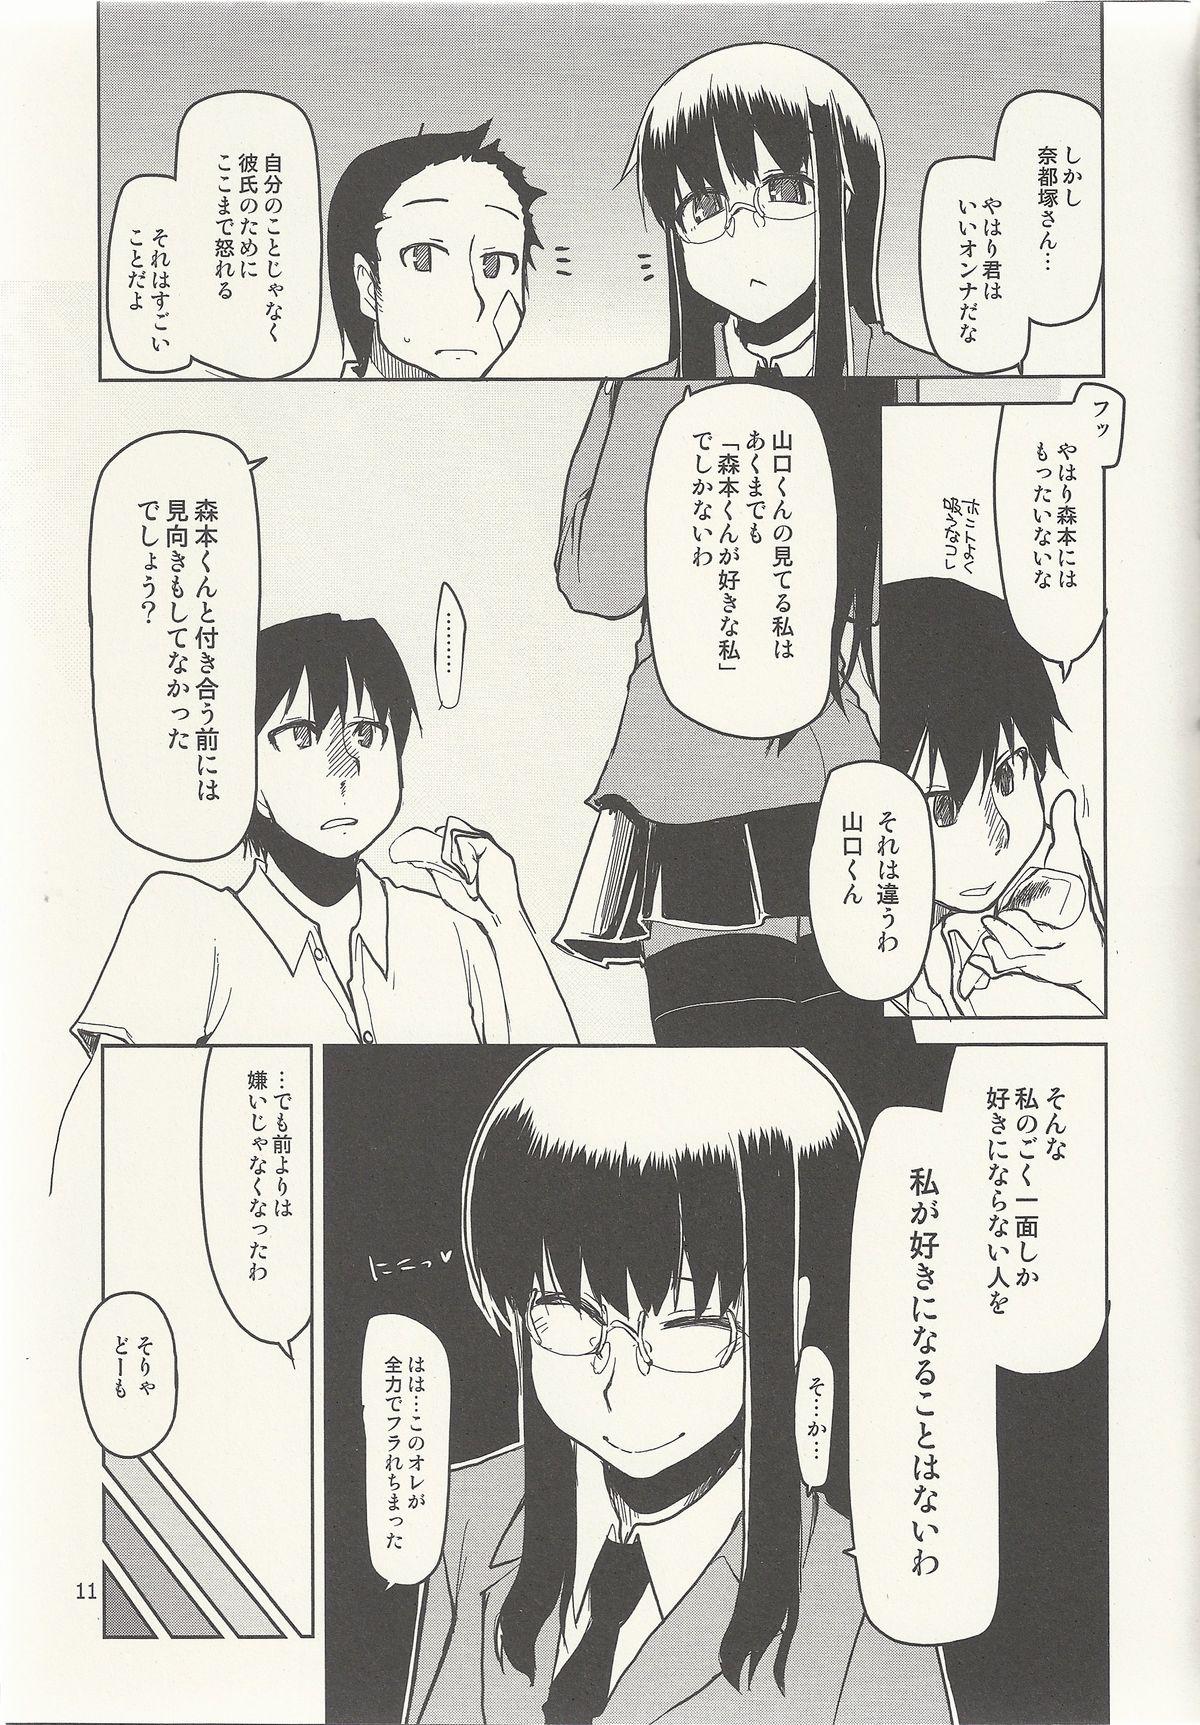 Natsuzuka-san no Himitsu. Vol. 6 Kanketsu Hen 11